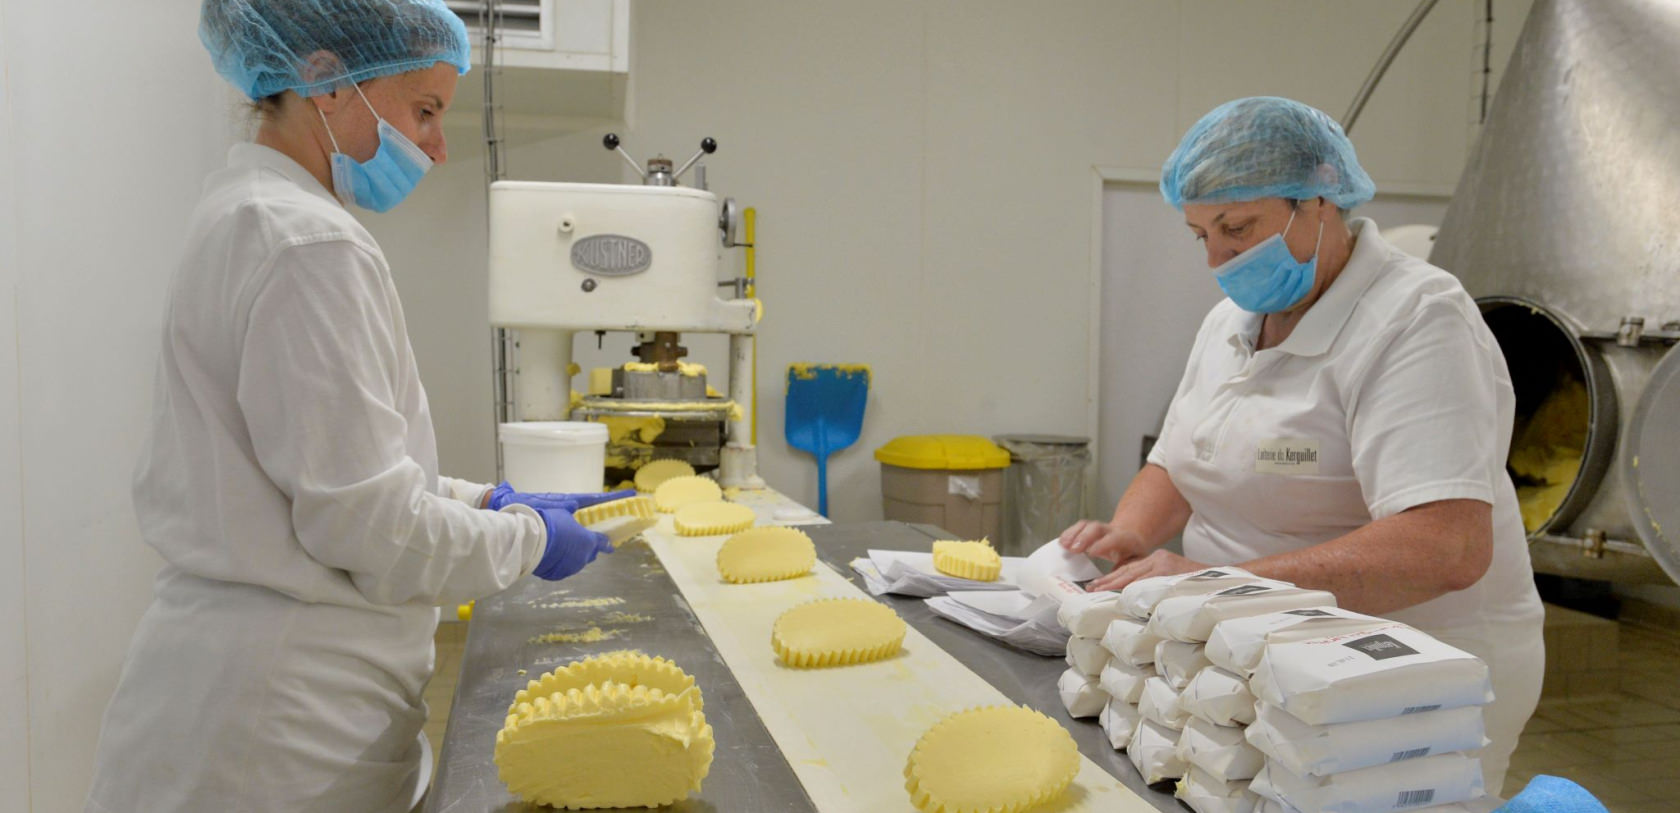 Fabrication de beurre breton, savoir-faire artisanal à la Laiterie de Kerguillet à Plouay (Morbihan)